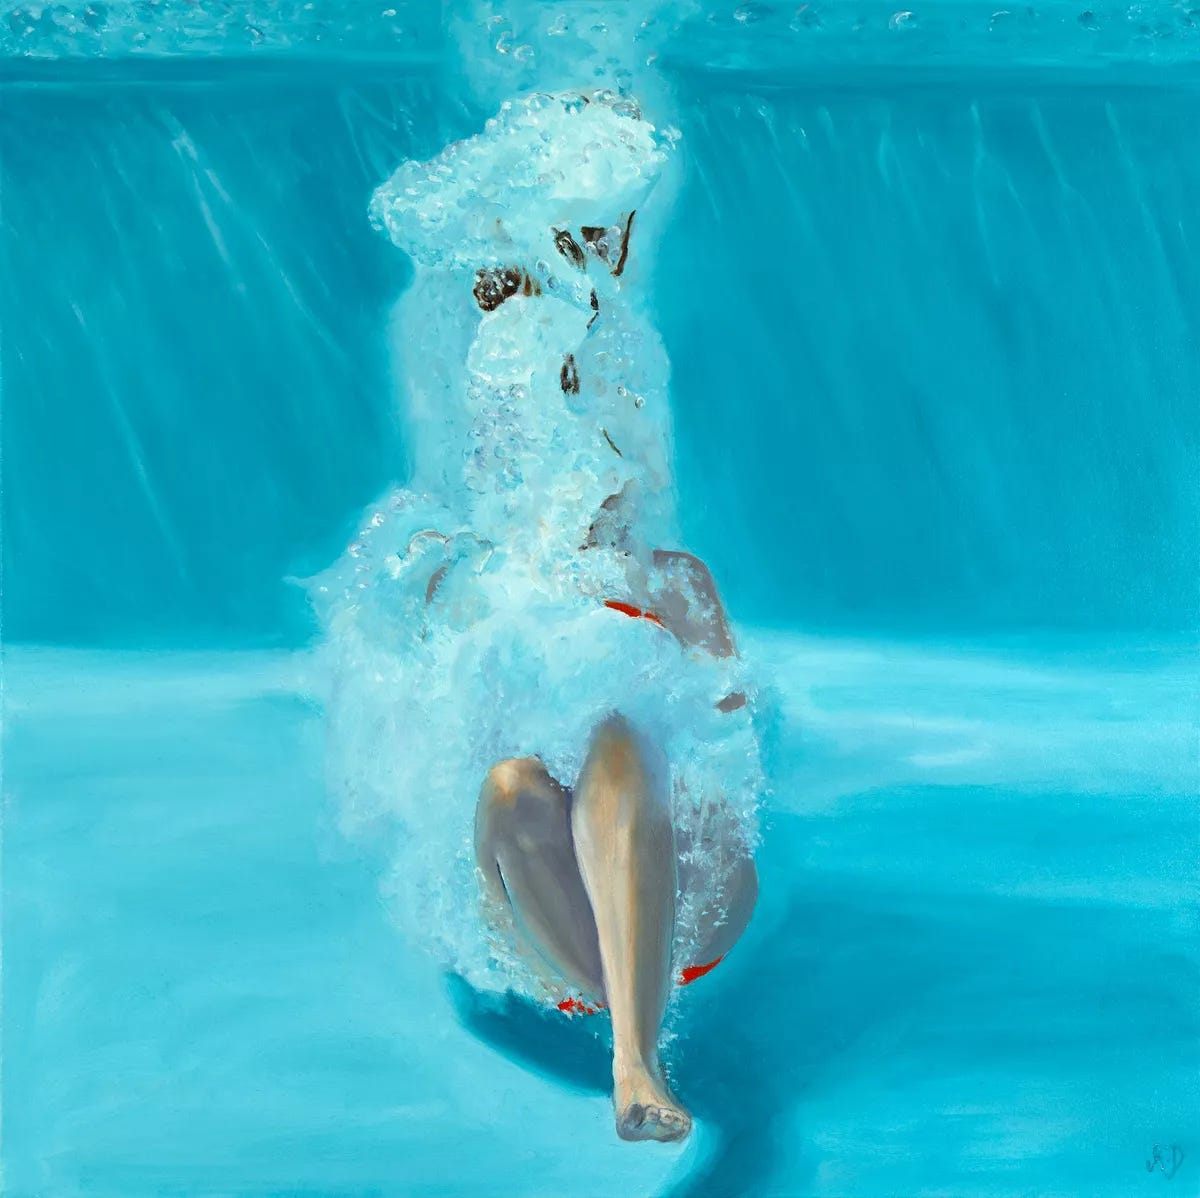 Pintura fundo de uma piscina com uma mulher dando um tibum. Não se vê o rosto dela, que está quase sentada e o movimento da água a esconde por trás. Ela veste um maiô vermelho e a obra é azul clara.